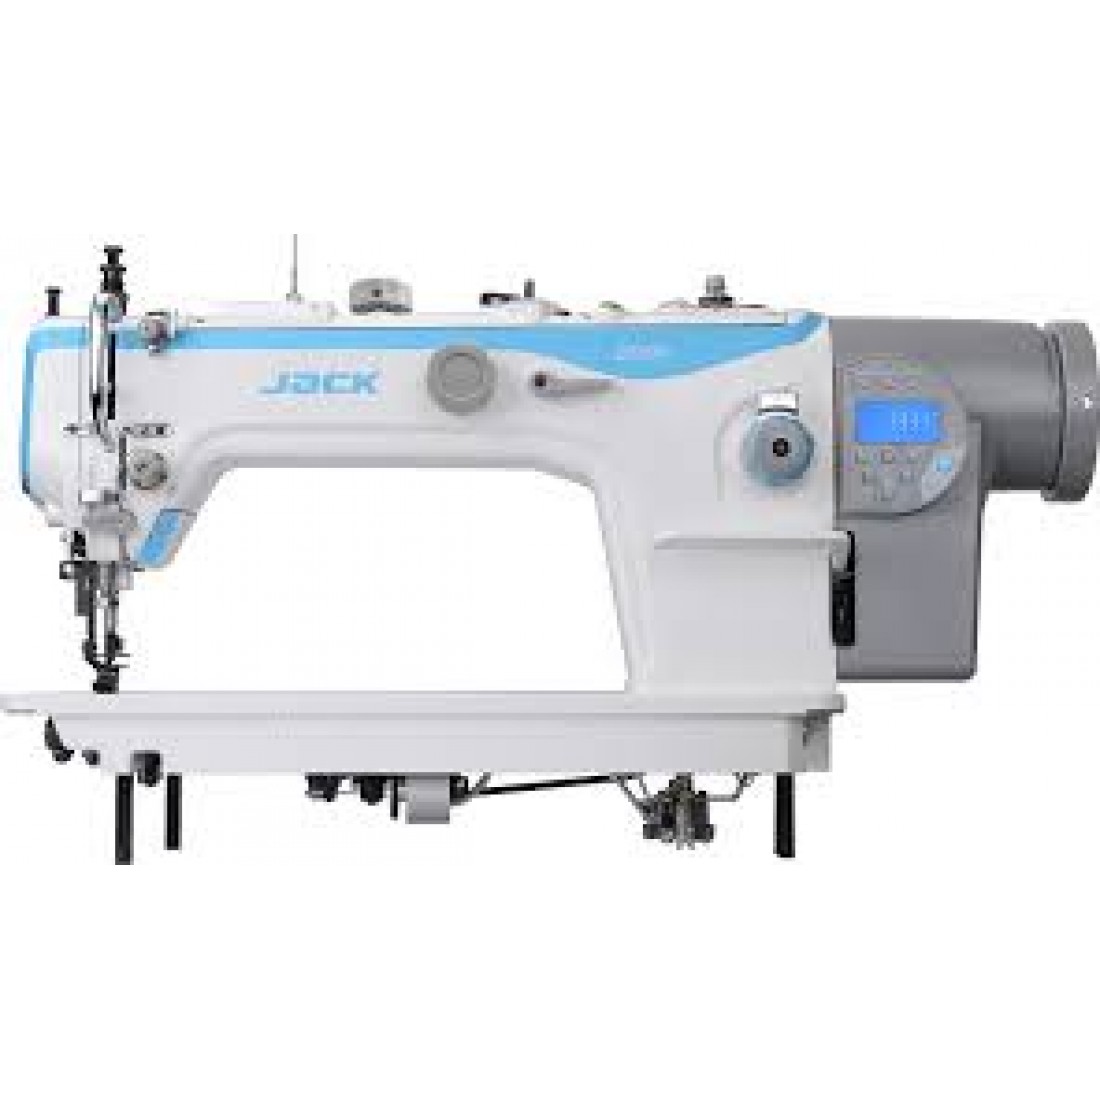 Промышленная машина с шагающей лапкой. Промышленная швейная машина Jack JK-2030ghc-4q. Jack JK-2060ghc-4q. Промышленная швейная машина Jack JK-2030ghc-4q(комплект). Швейная машина Jack 2060 4q.